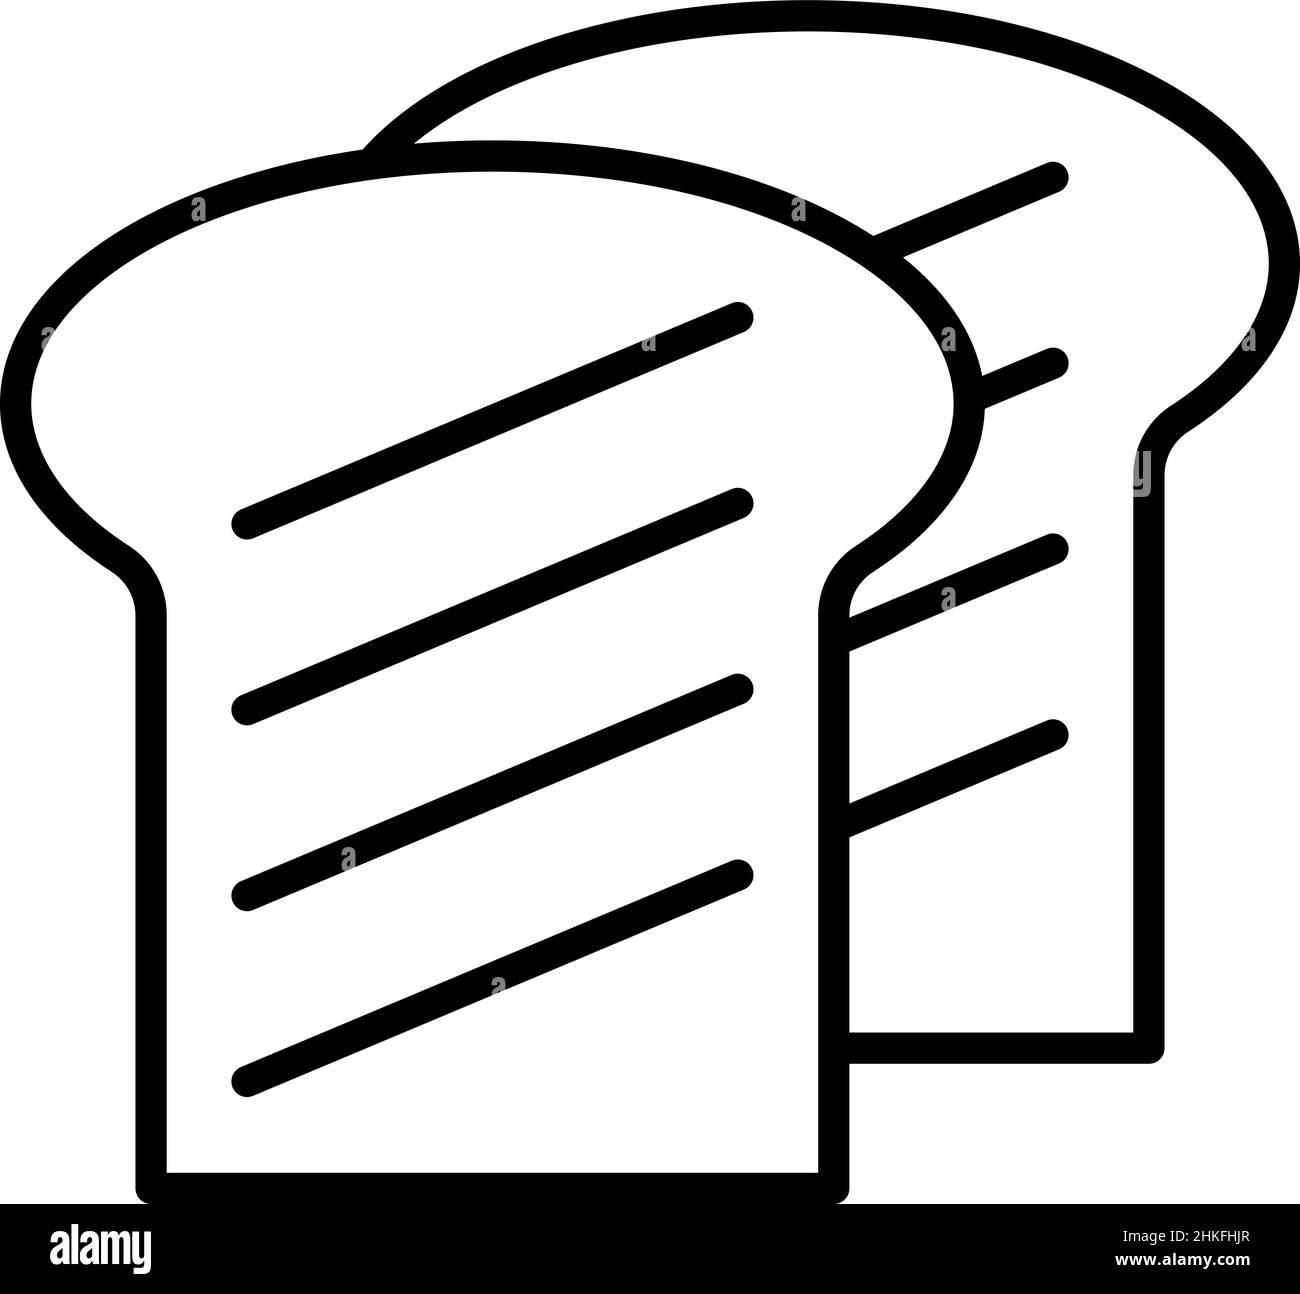 Symbole de pain grillé vecteur alimentaire Illustration de Vecteur